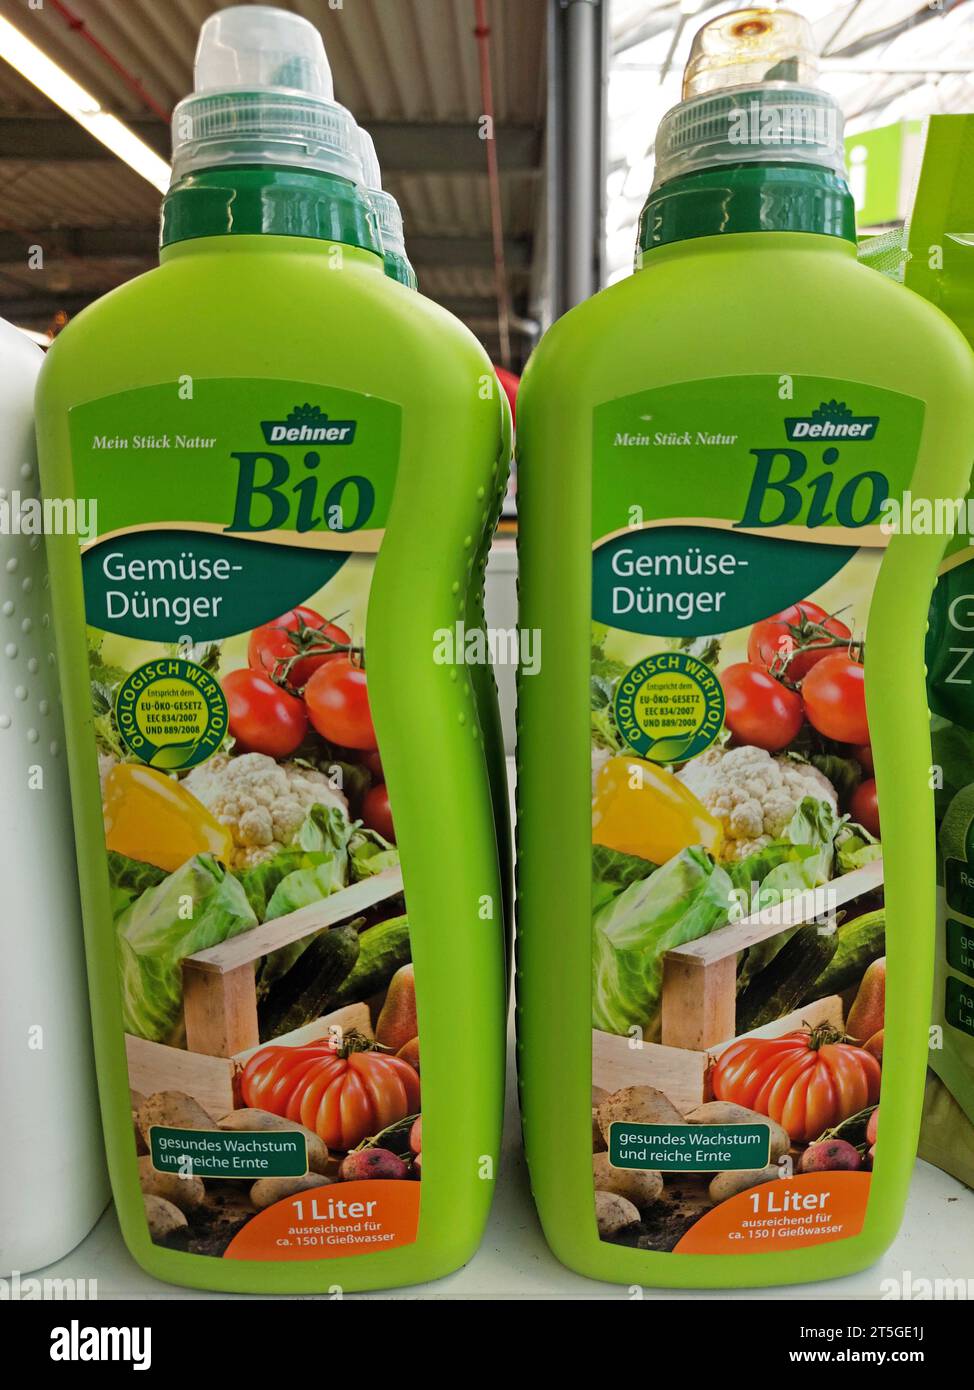 veggie fertilizer bottles by Dehner in a garden market Stock Photo